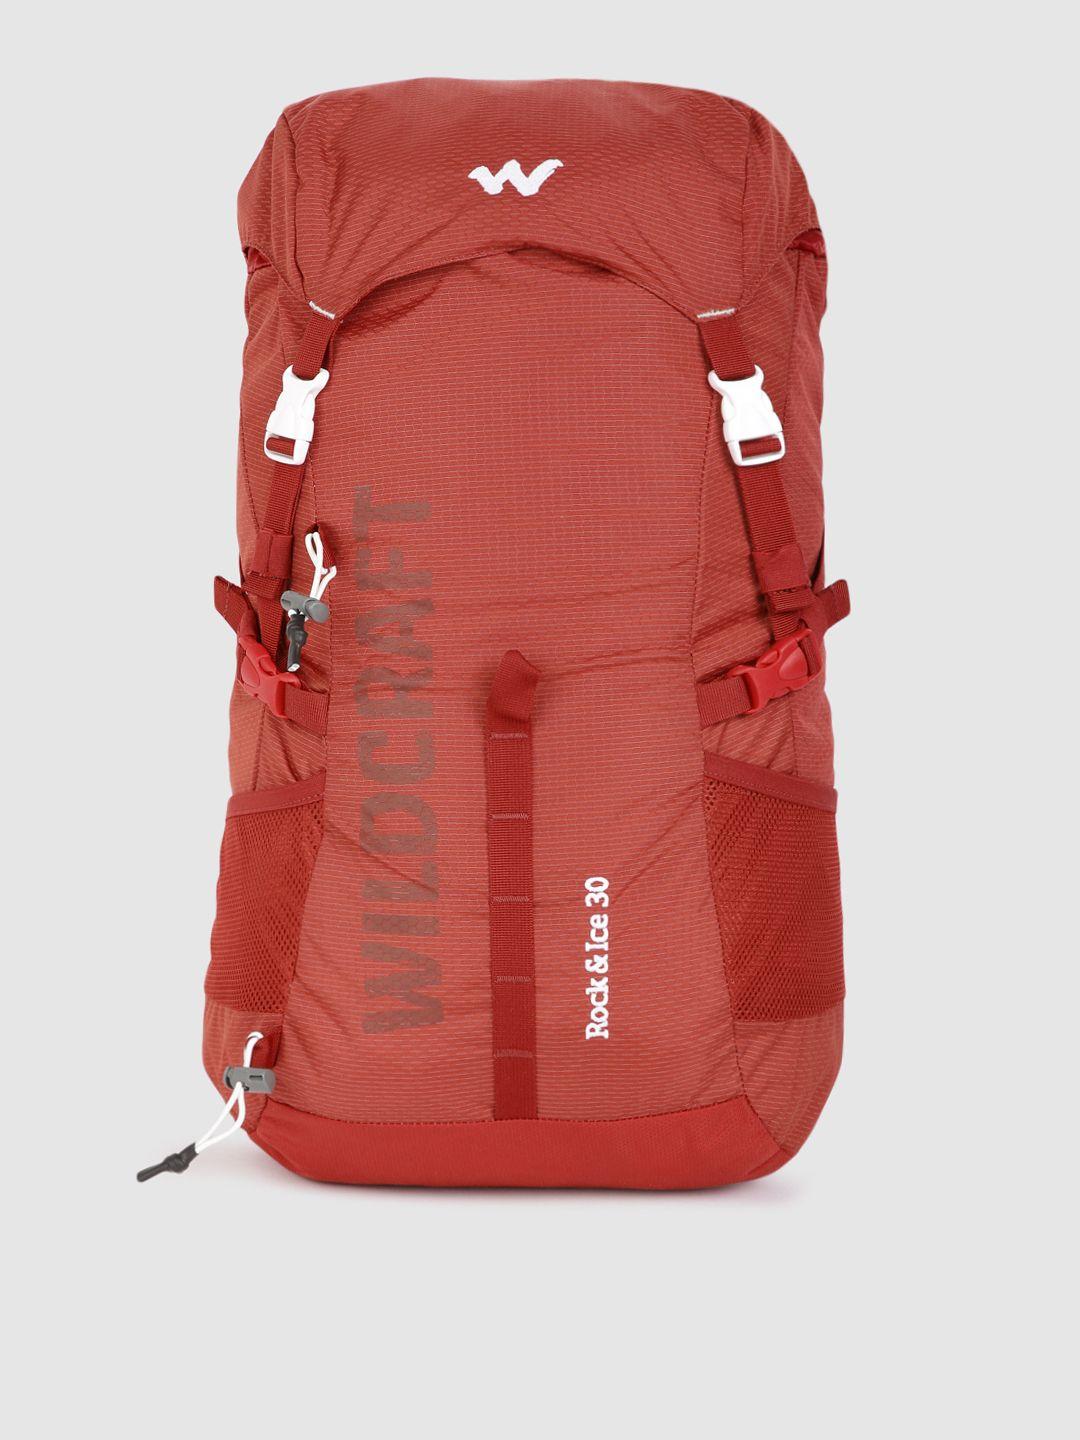 wildcraft unisex red rock & ice 30 brand logo rucksack